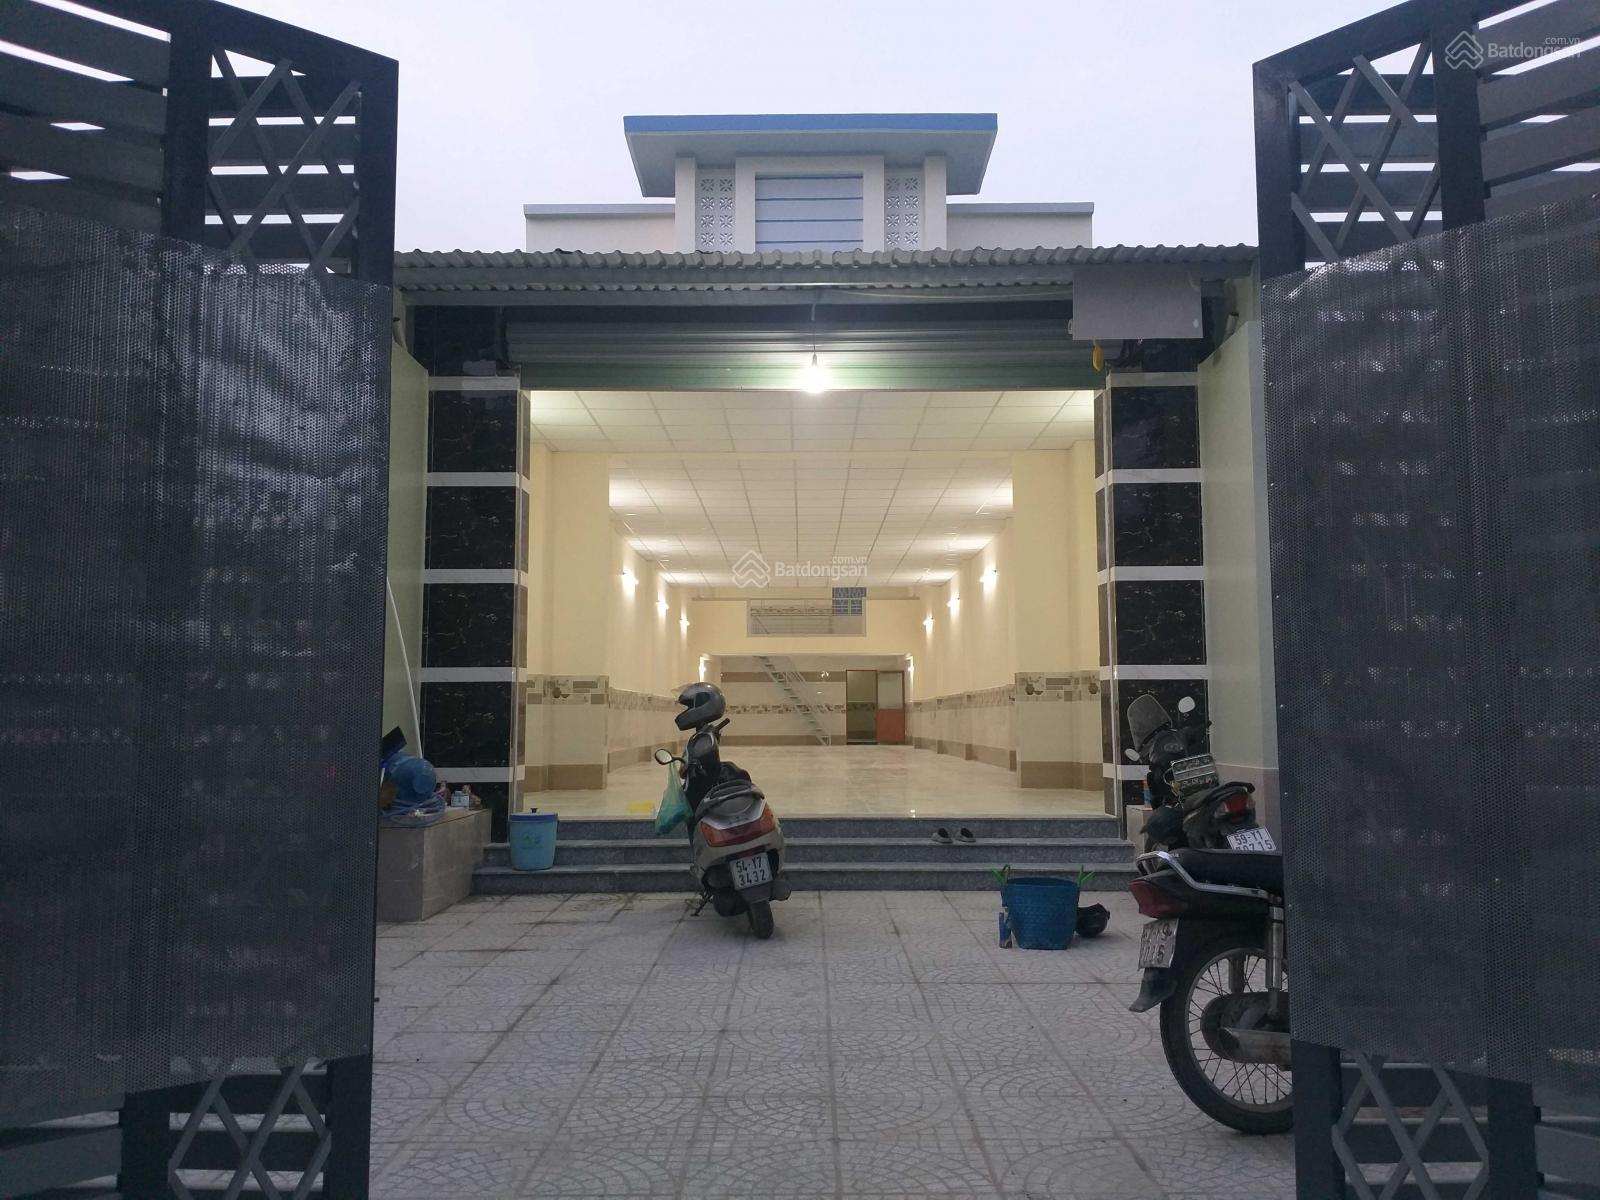 Cho thuê nhà mặt tiền đường Nguyễn Thị Pha, gần BH Xanh, Đông Thạnh, Hóc Môn (6x38m), 210 m2 sàn